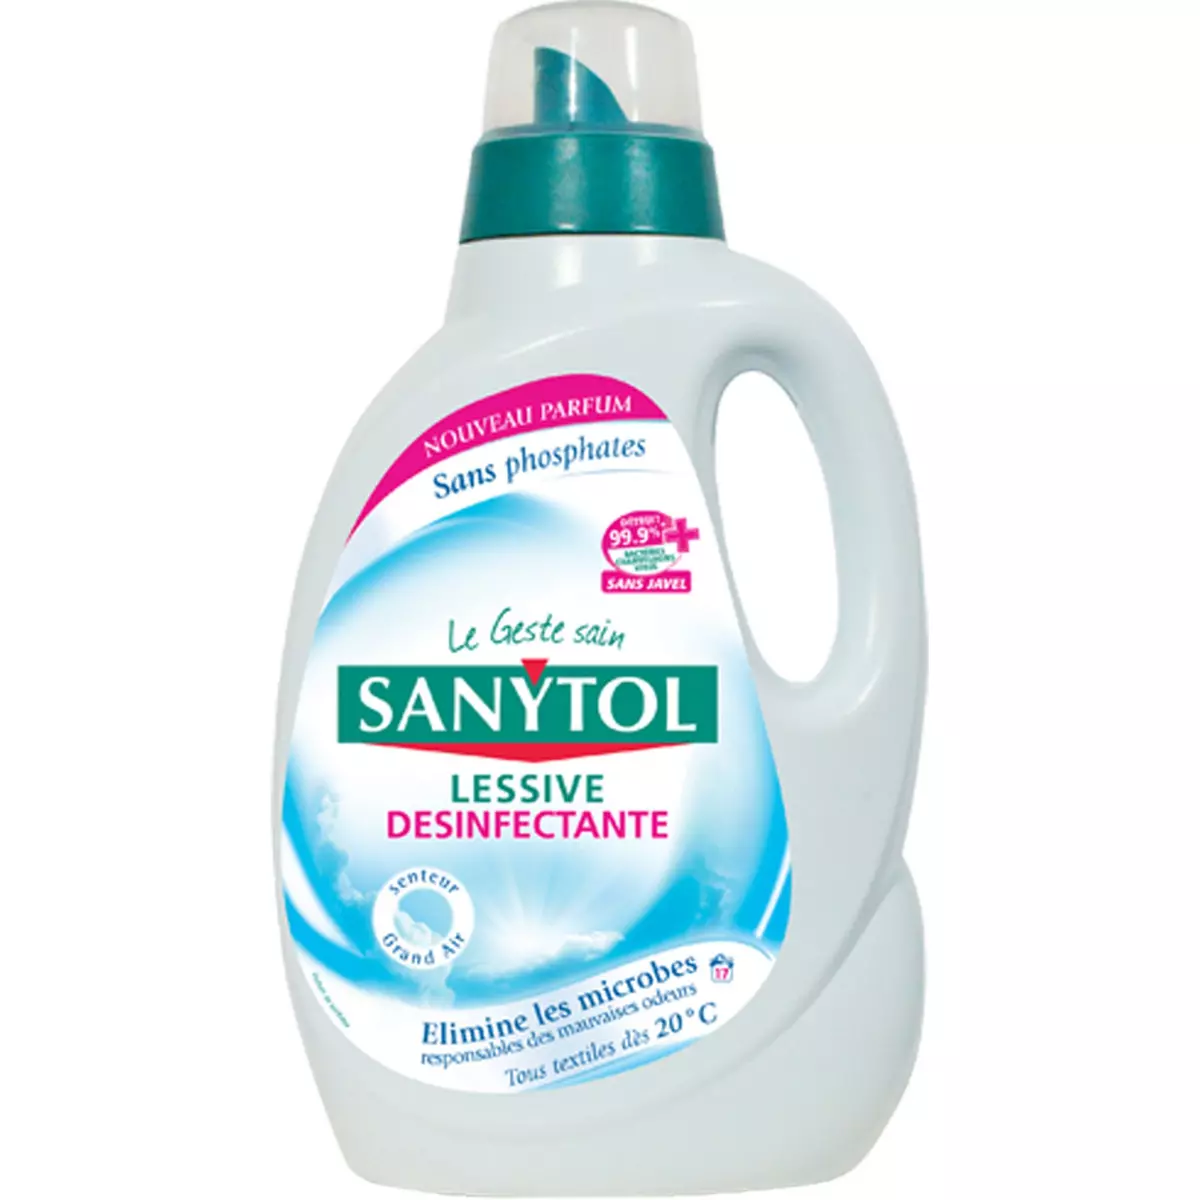 SANYTOL Lessive liquide désinfectante grand air 17 lavages 1,65l